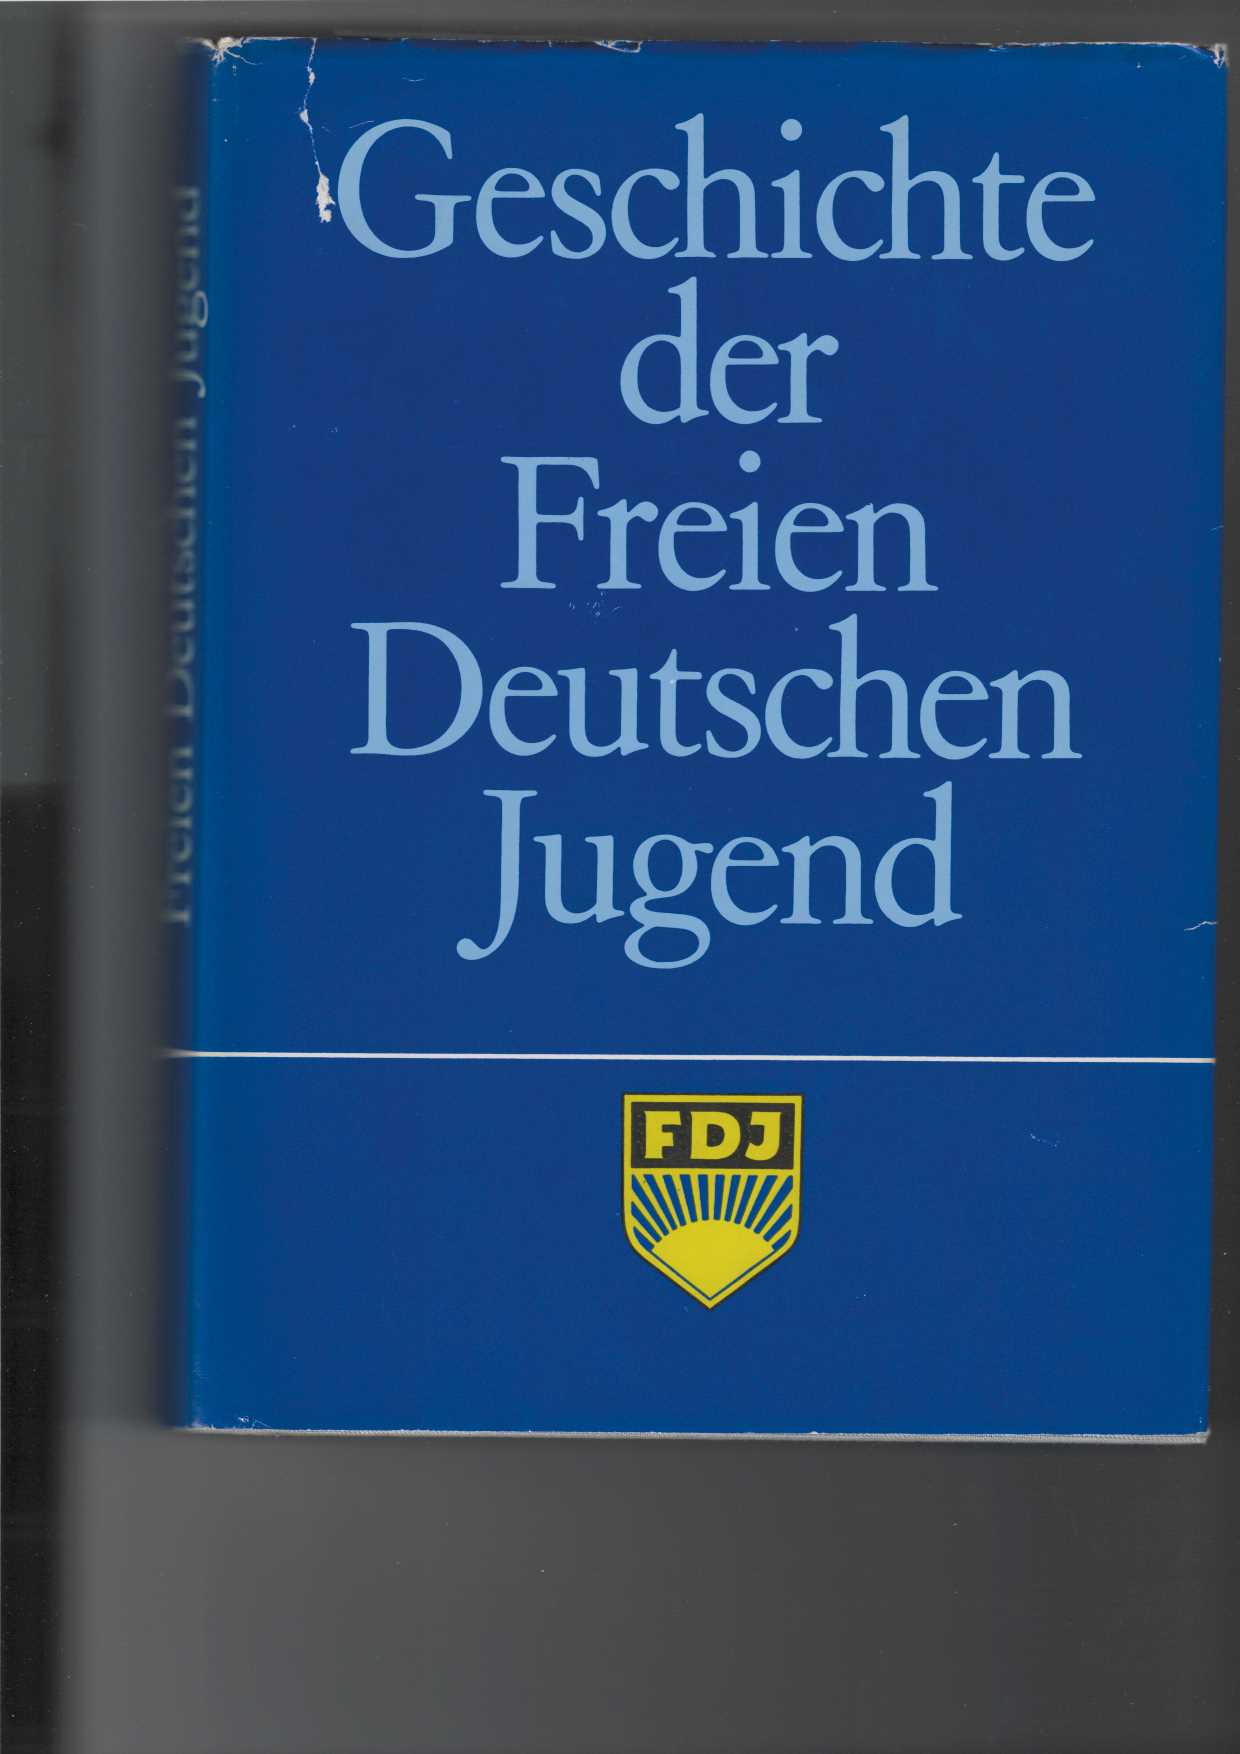 Autorenkollektiv:  Geschichte der Freien Deutschen Jugend (FDJ). 